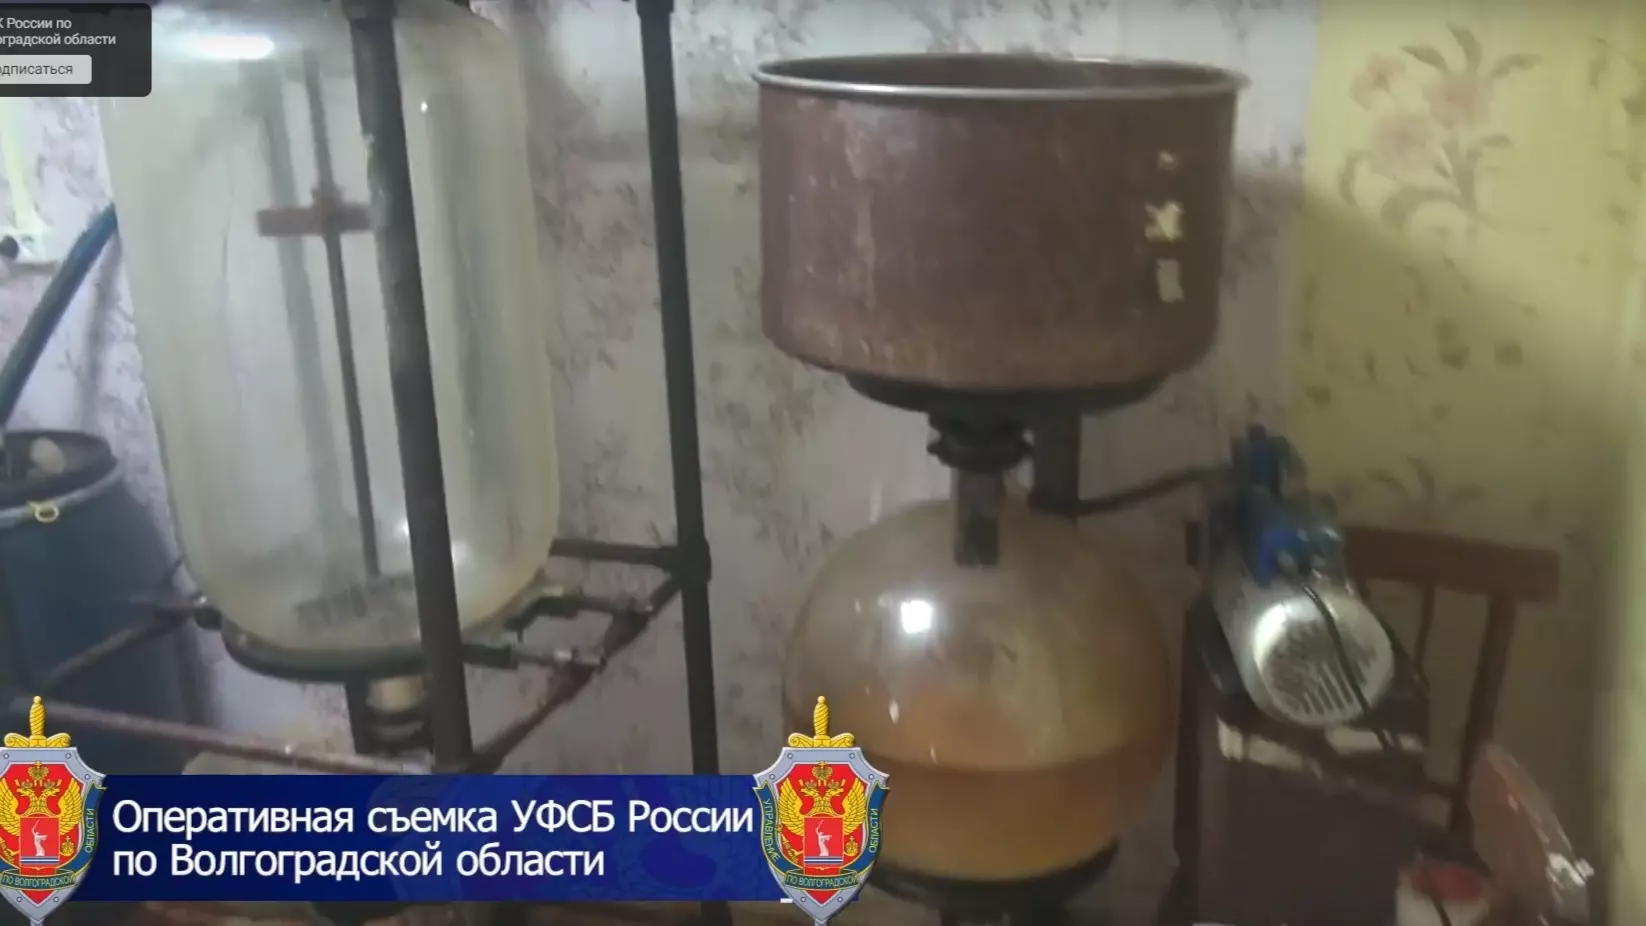 Нарколабораторию полицейского обнаружили силовики в Иловлинском районе